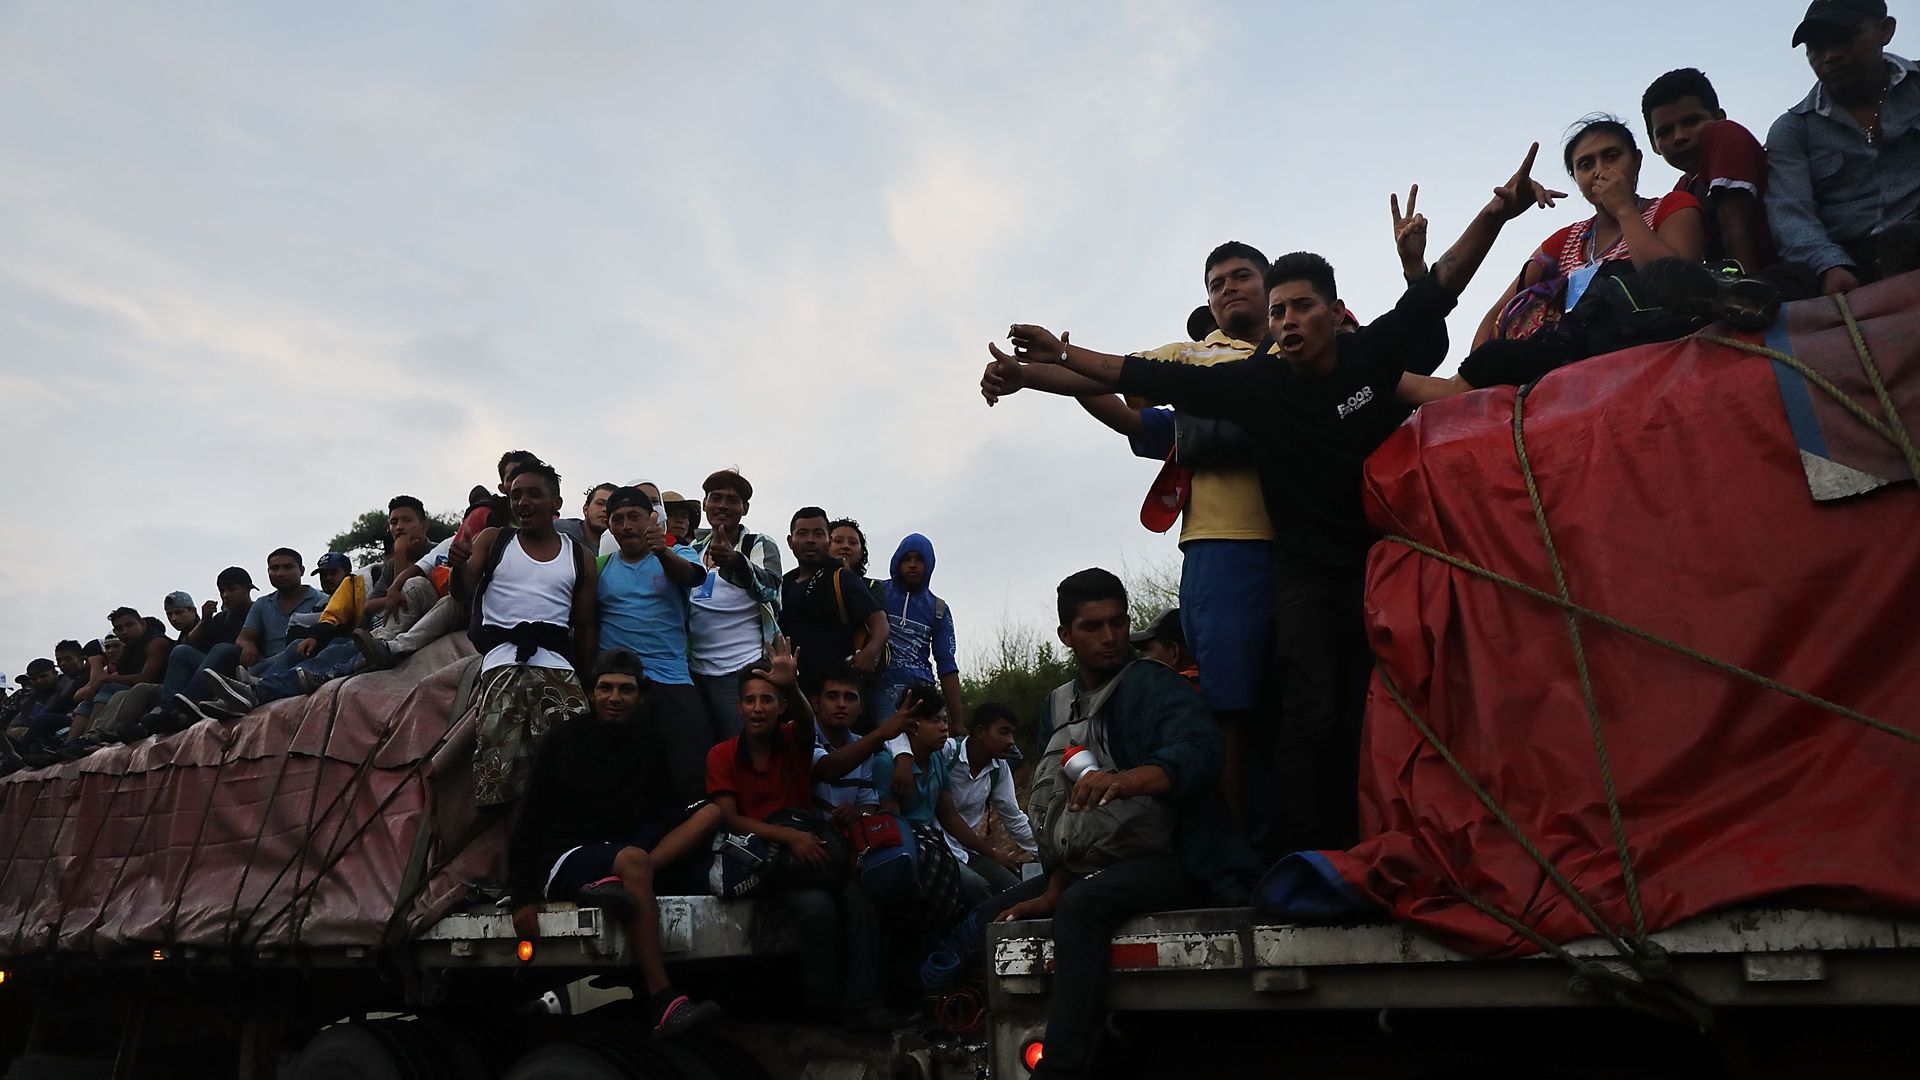 The migrant caravan